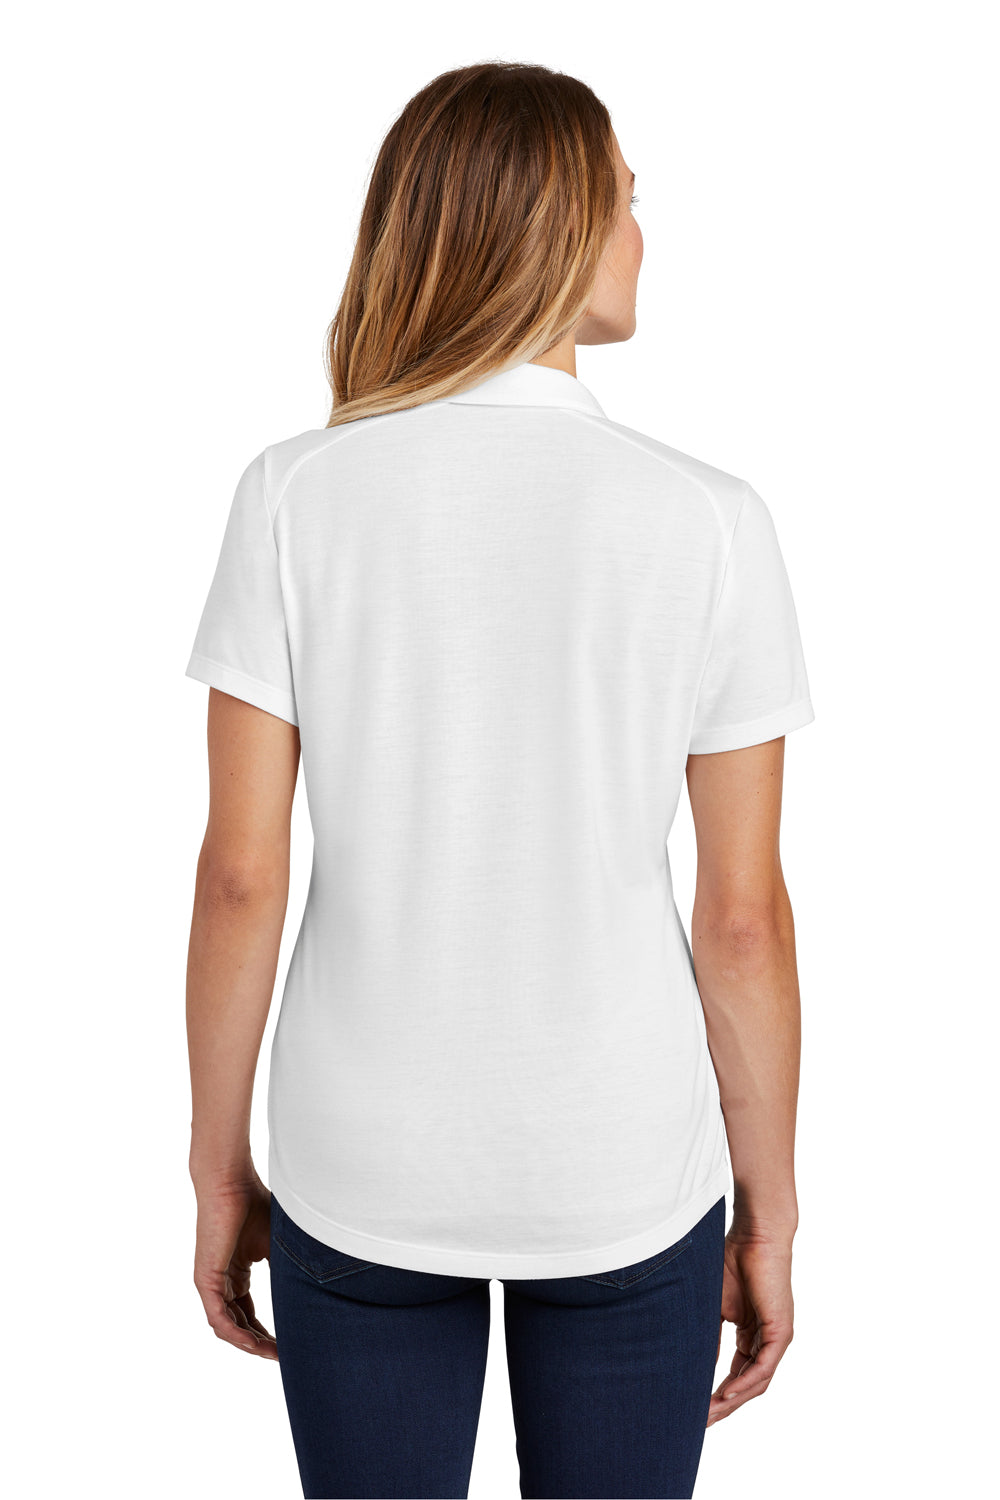 Sport-Tek LST405 Womens Moisture Wicking Short Sleeve Polo Shirt White Back